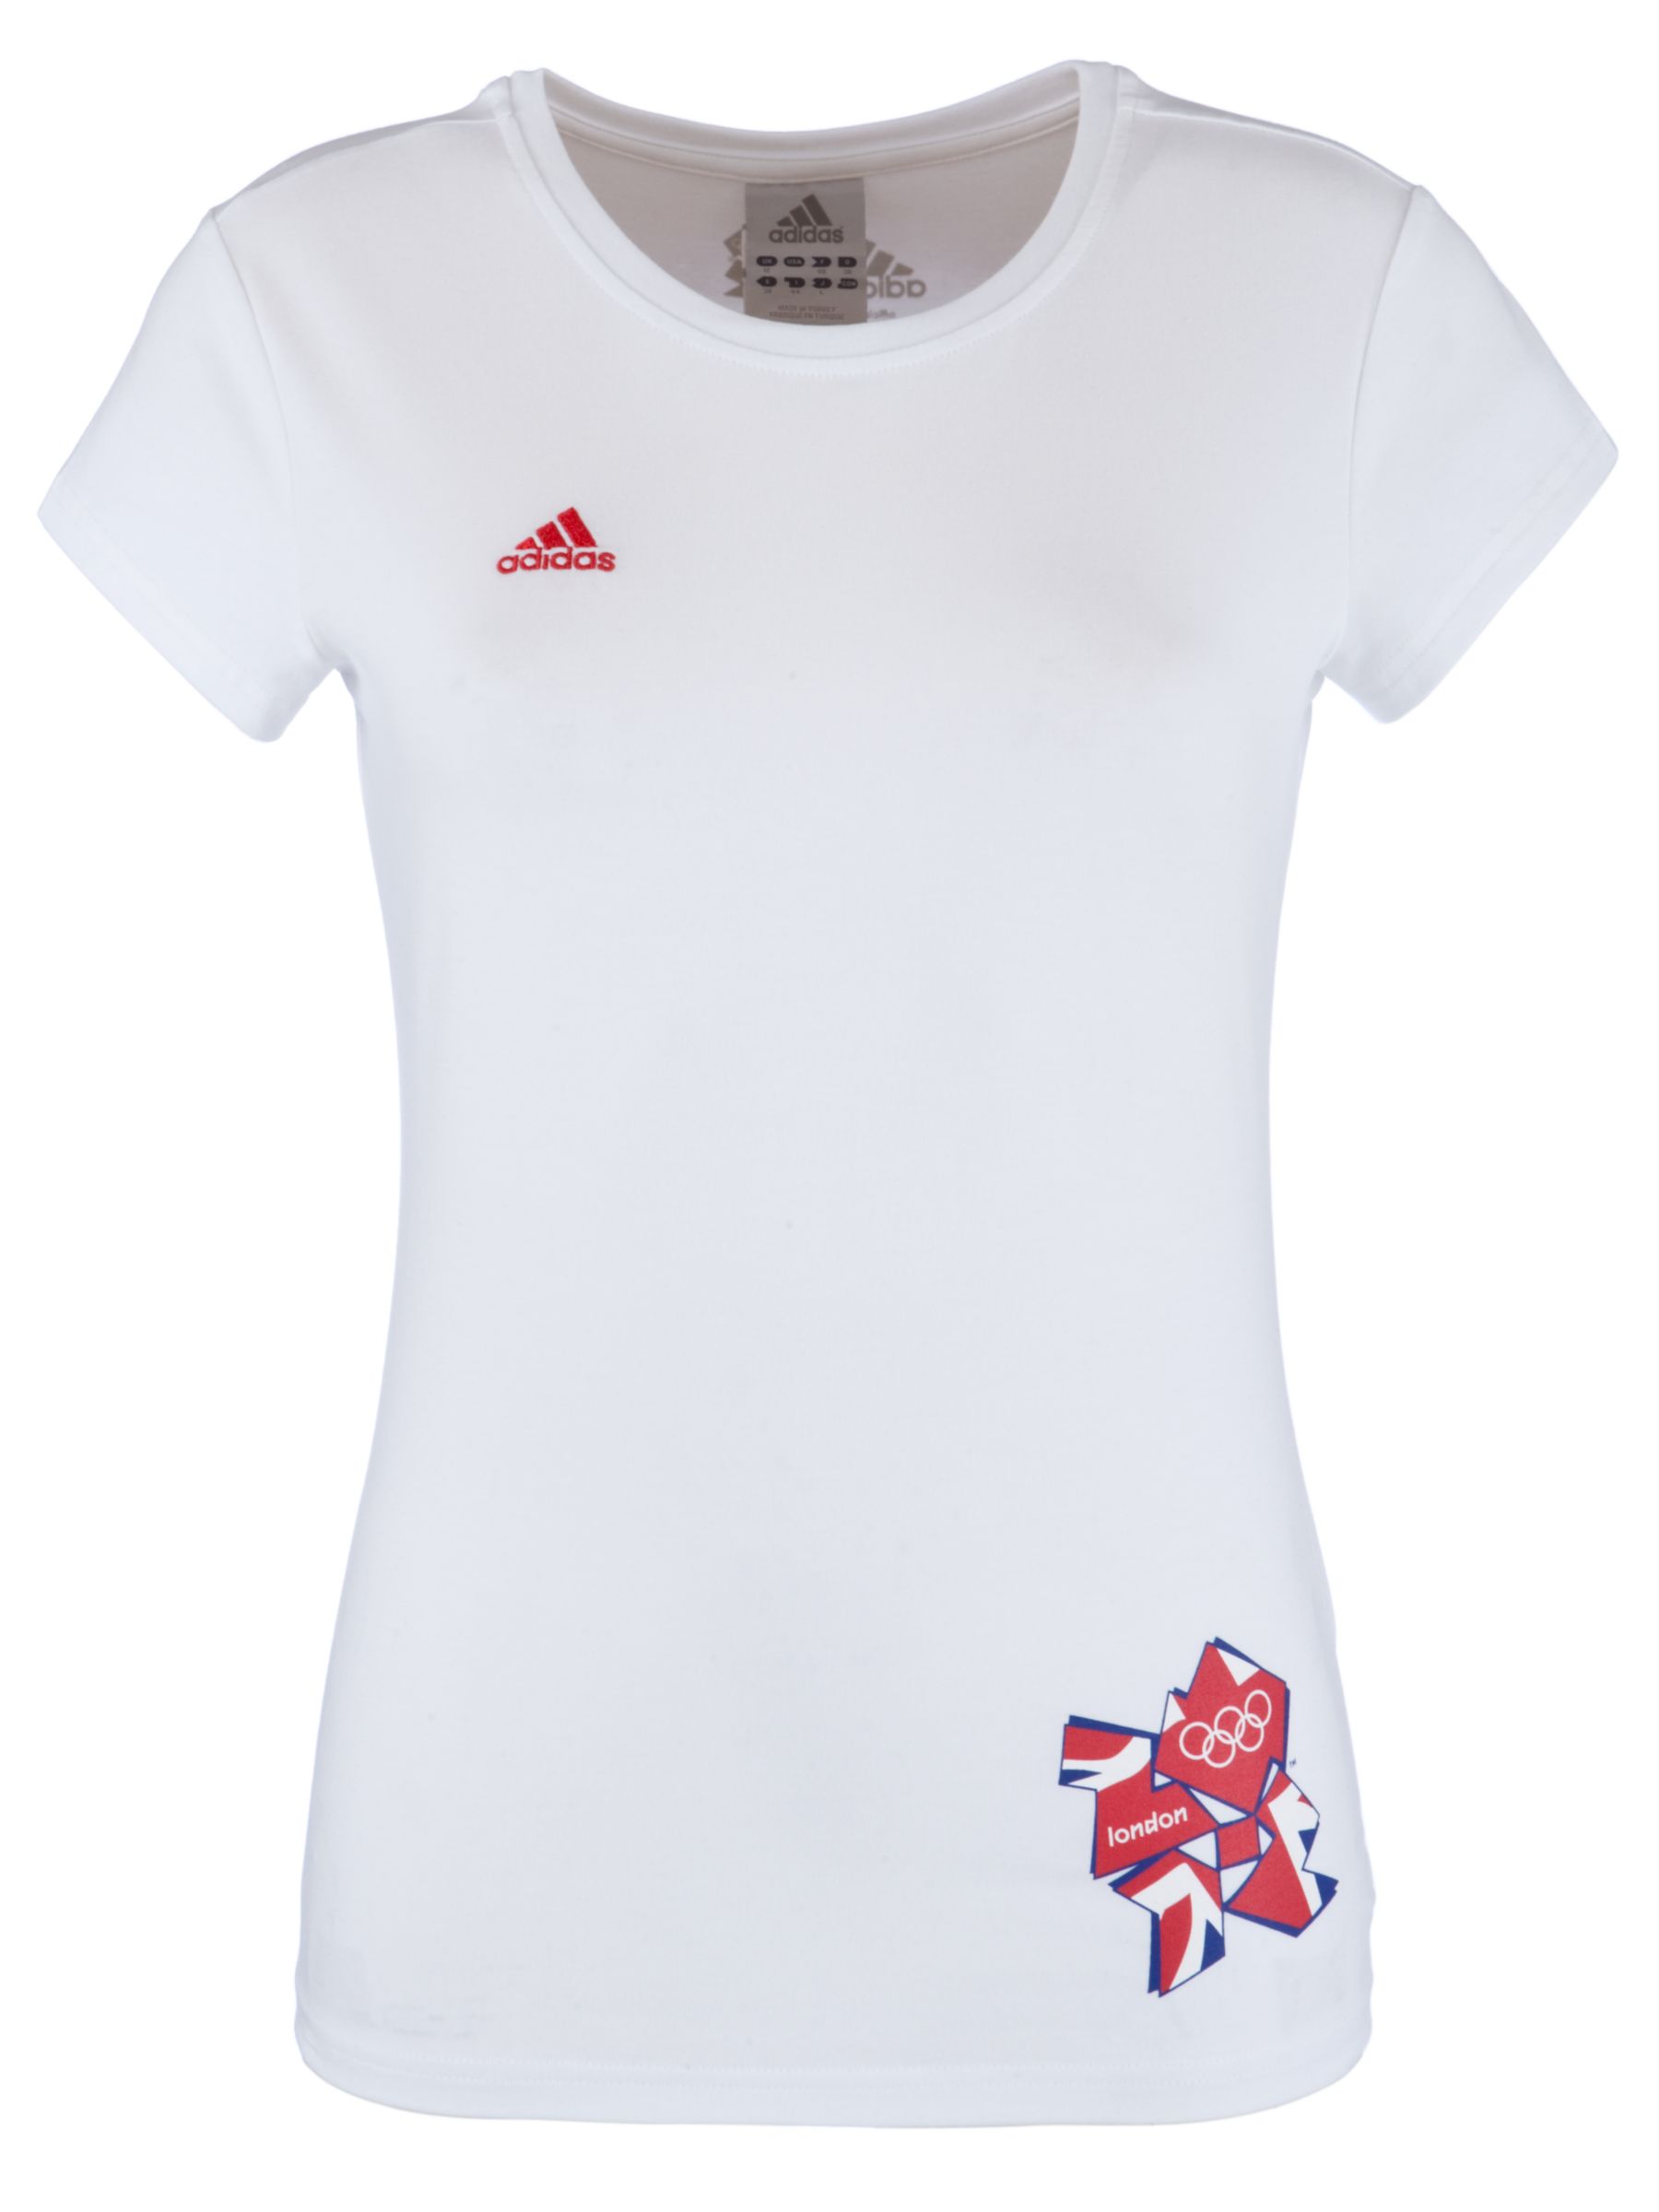 Adidas London 2012 Olympic Union Jack T-Shirt,